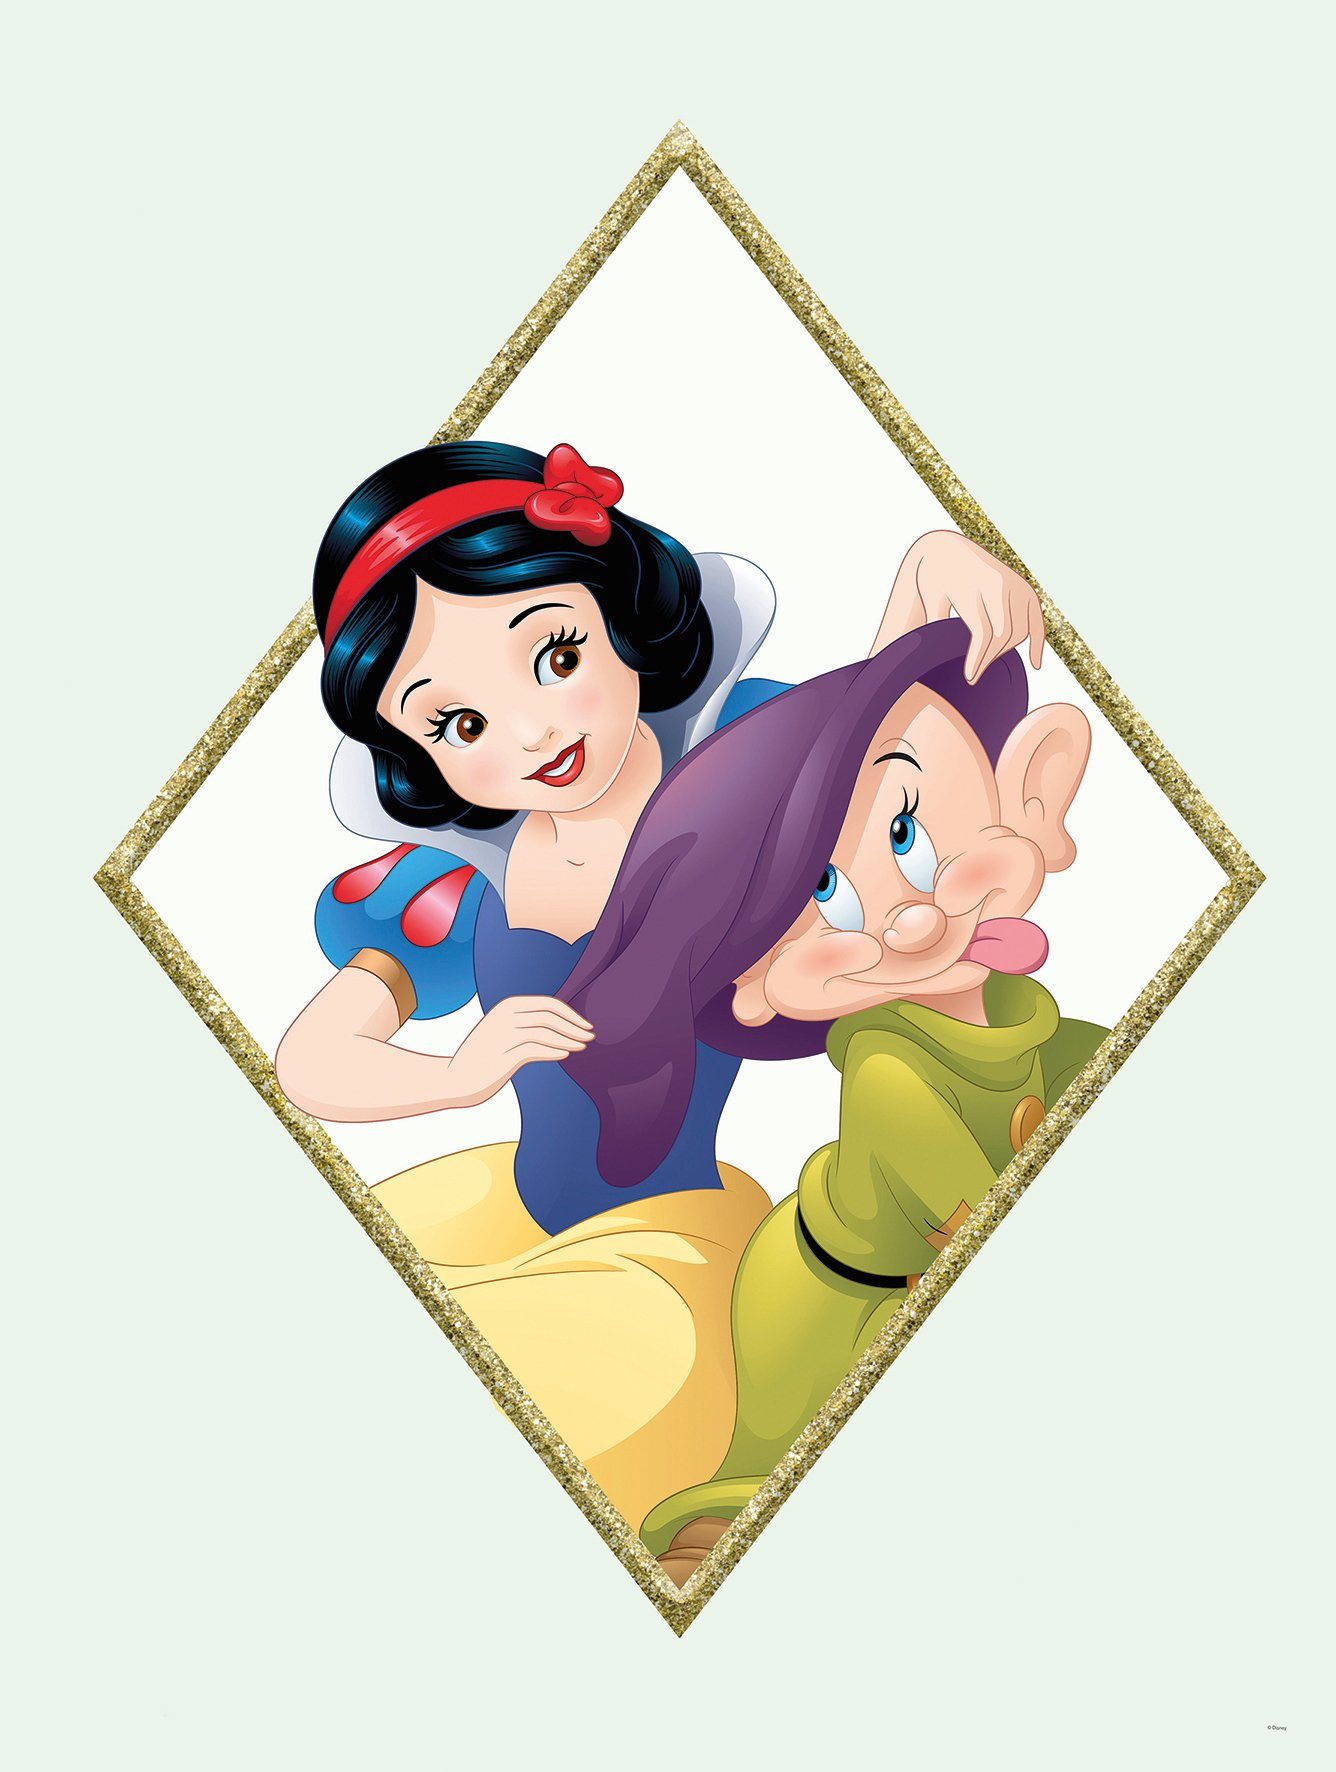 Komar Poster Snow white & Dopey